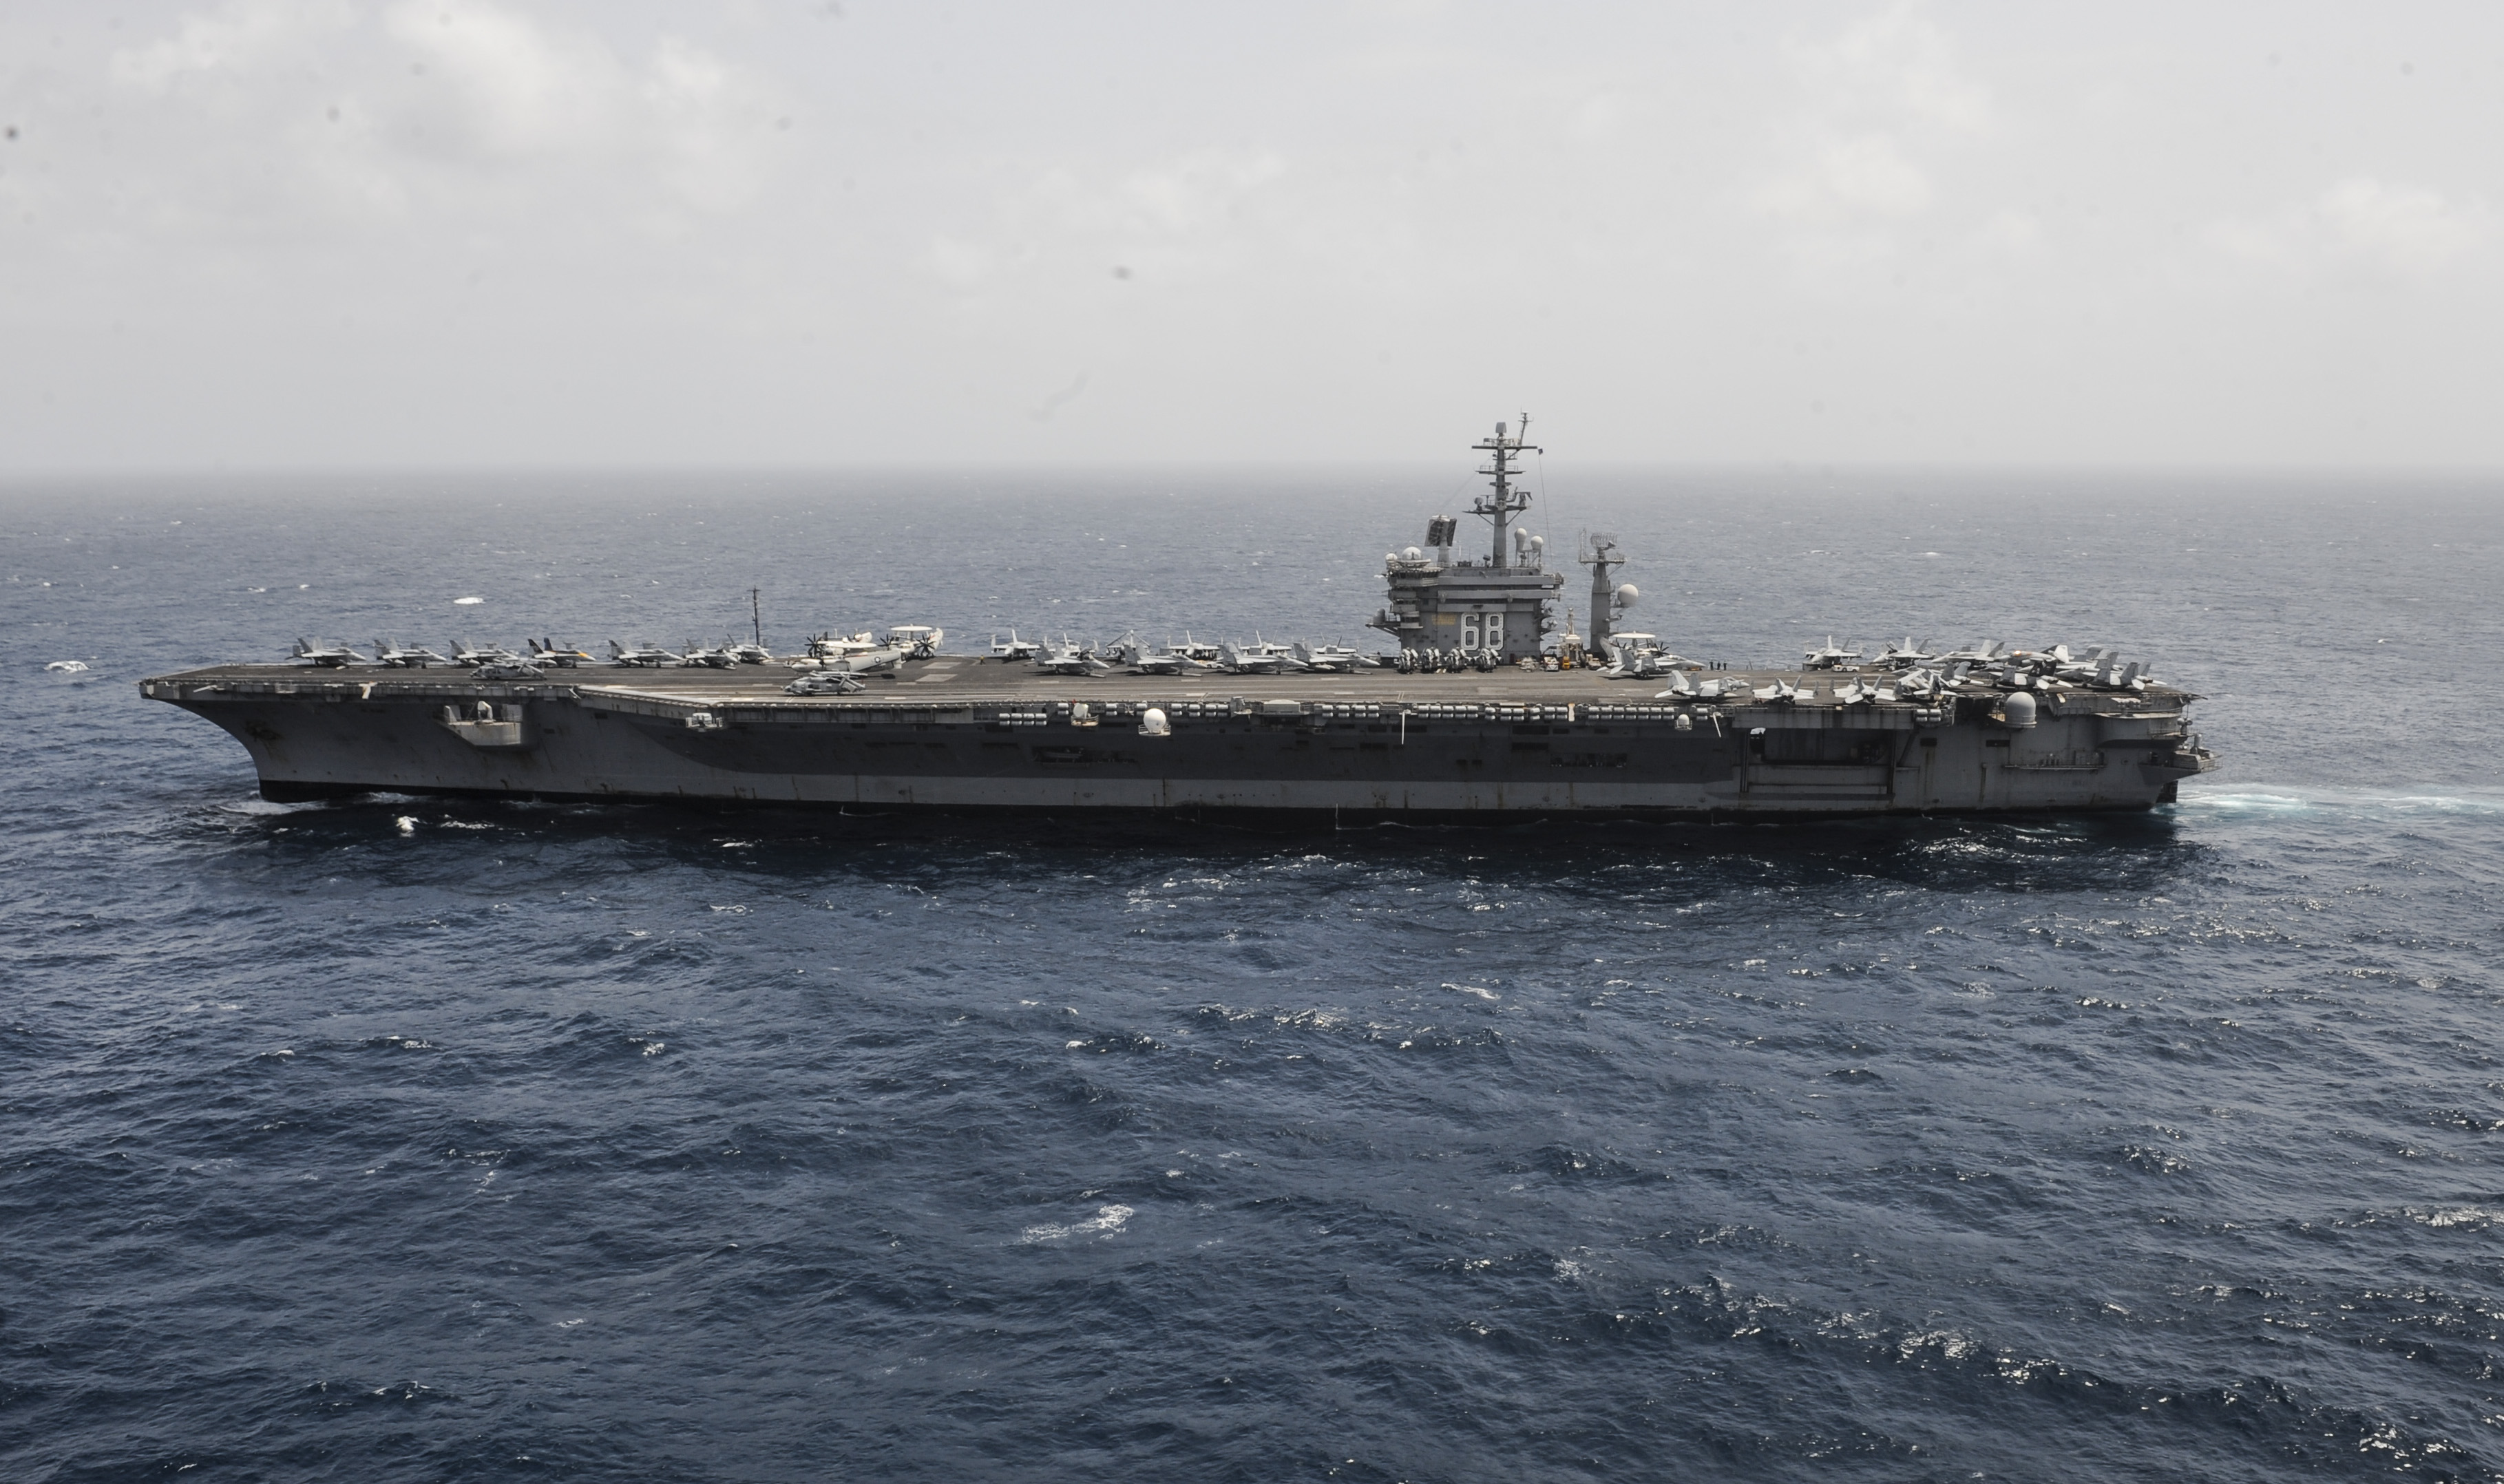 USS NIMITZ CVN-68 am 29.08.2013 im Arabischen MeerBild: U.S. Navy